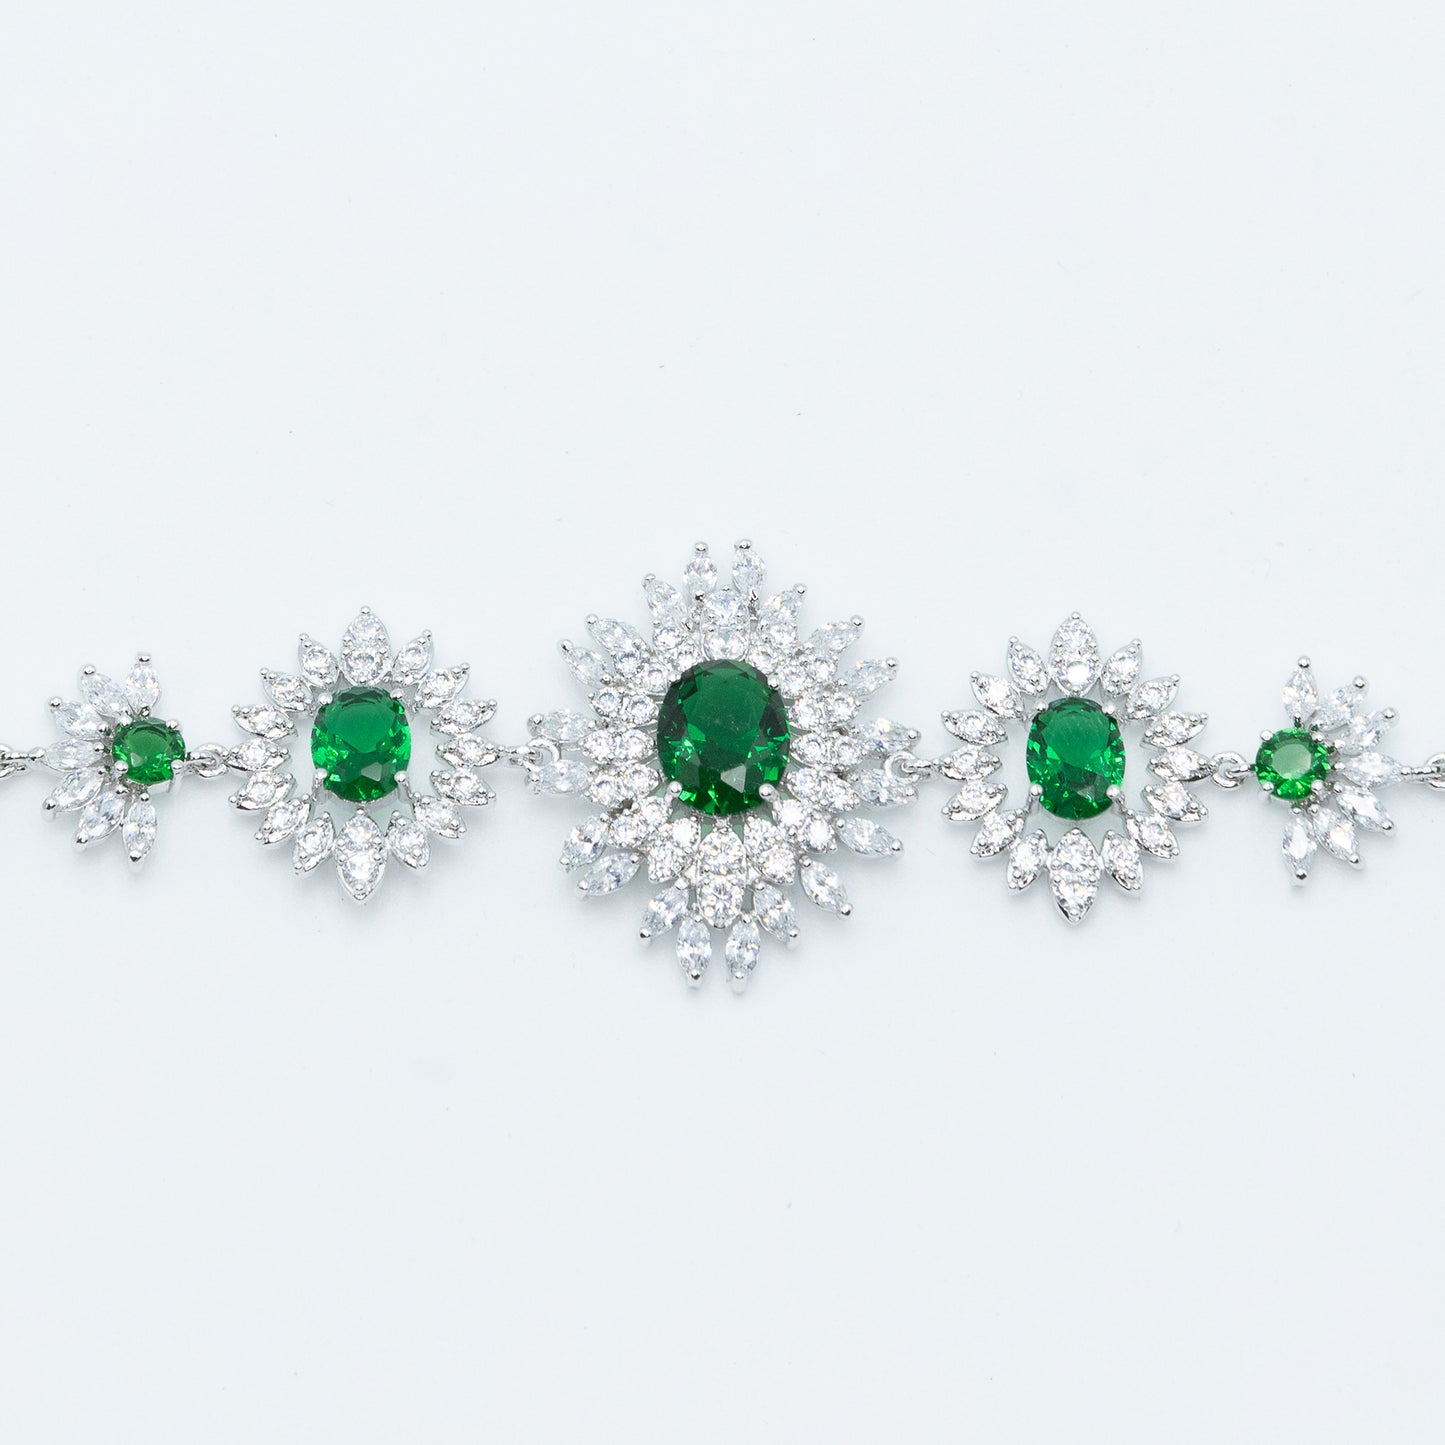 Sunburst tennis bracelet w/ 3A emerald/ clear CZ stones rhodium plated Default Title